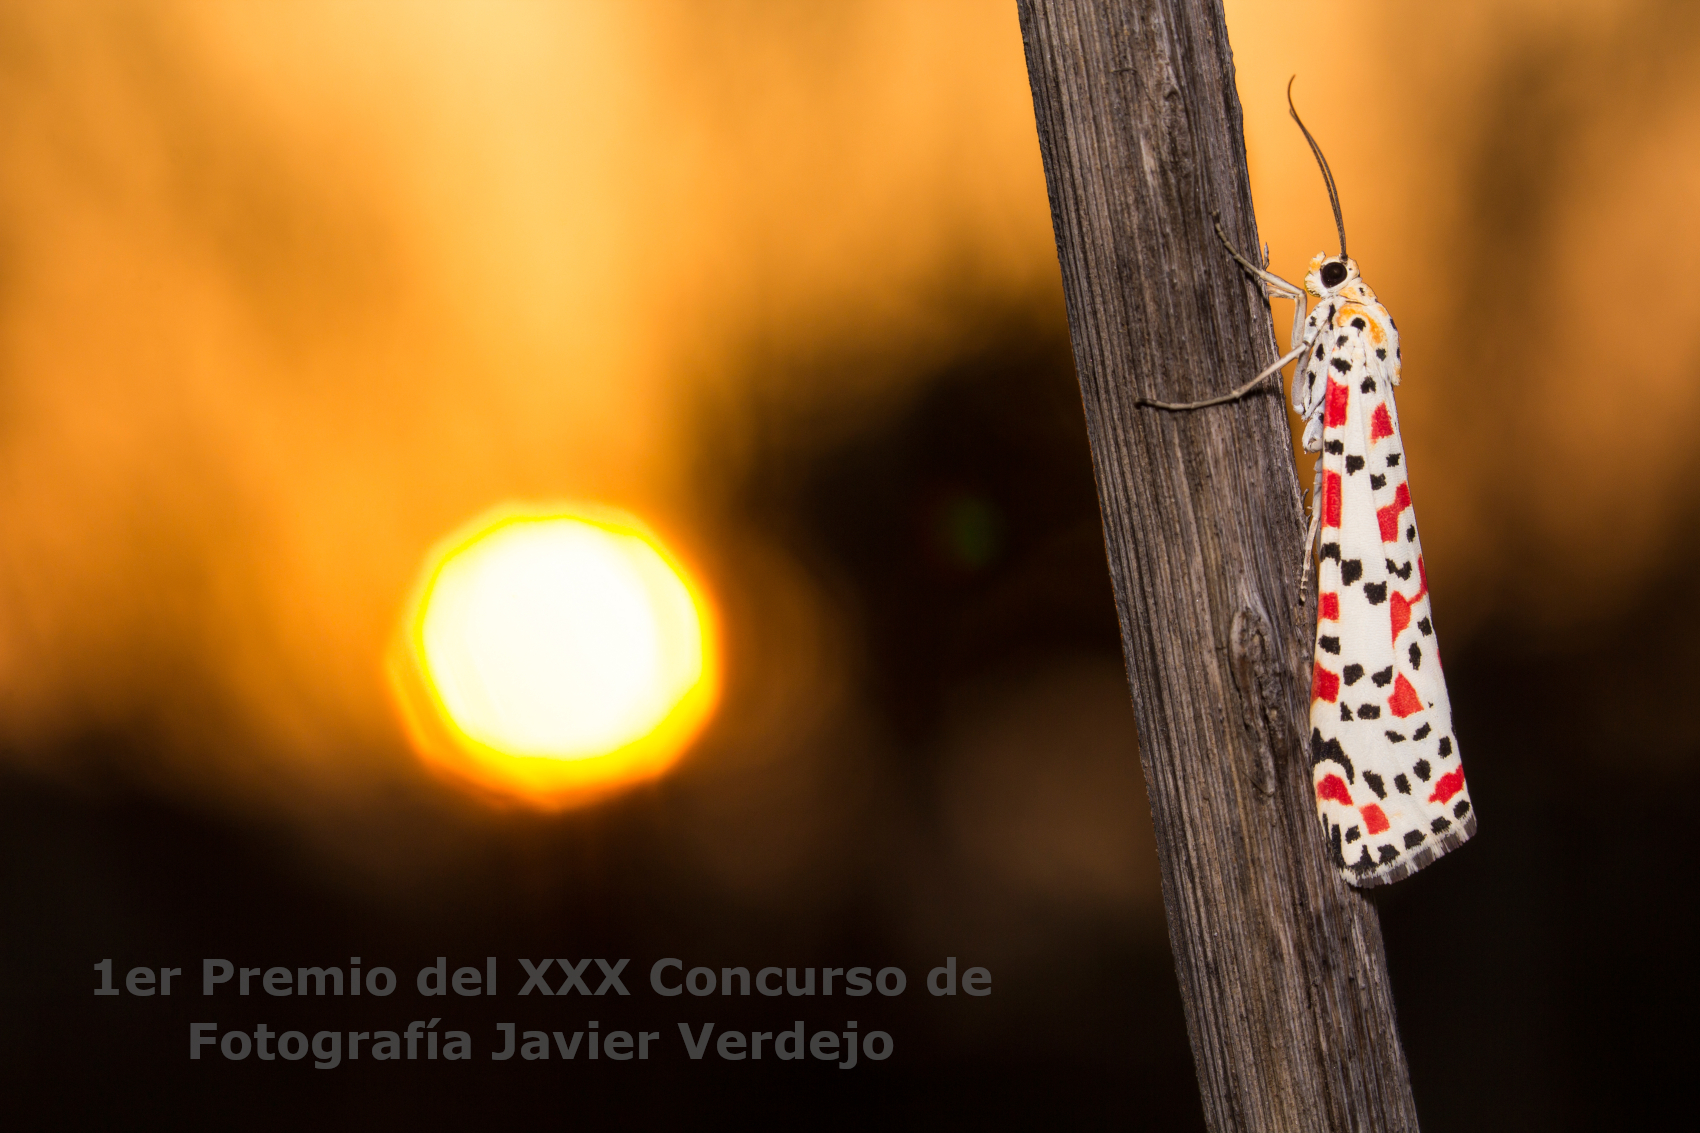 1er Premio del XXX Concurso de Fotografía Javier Verdejo